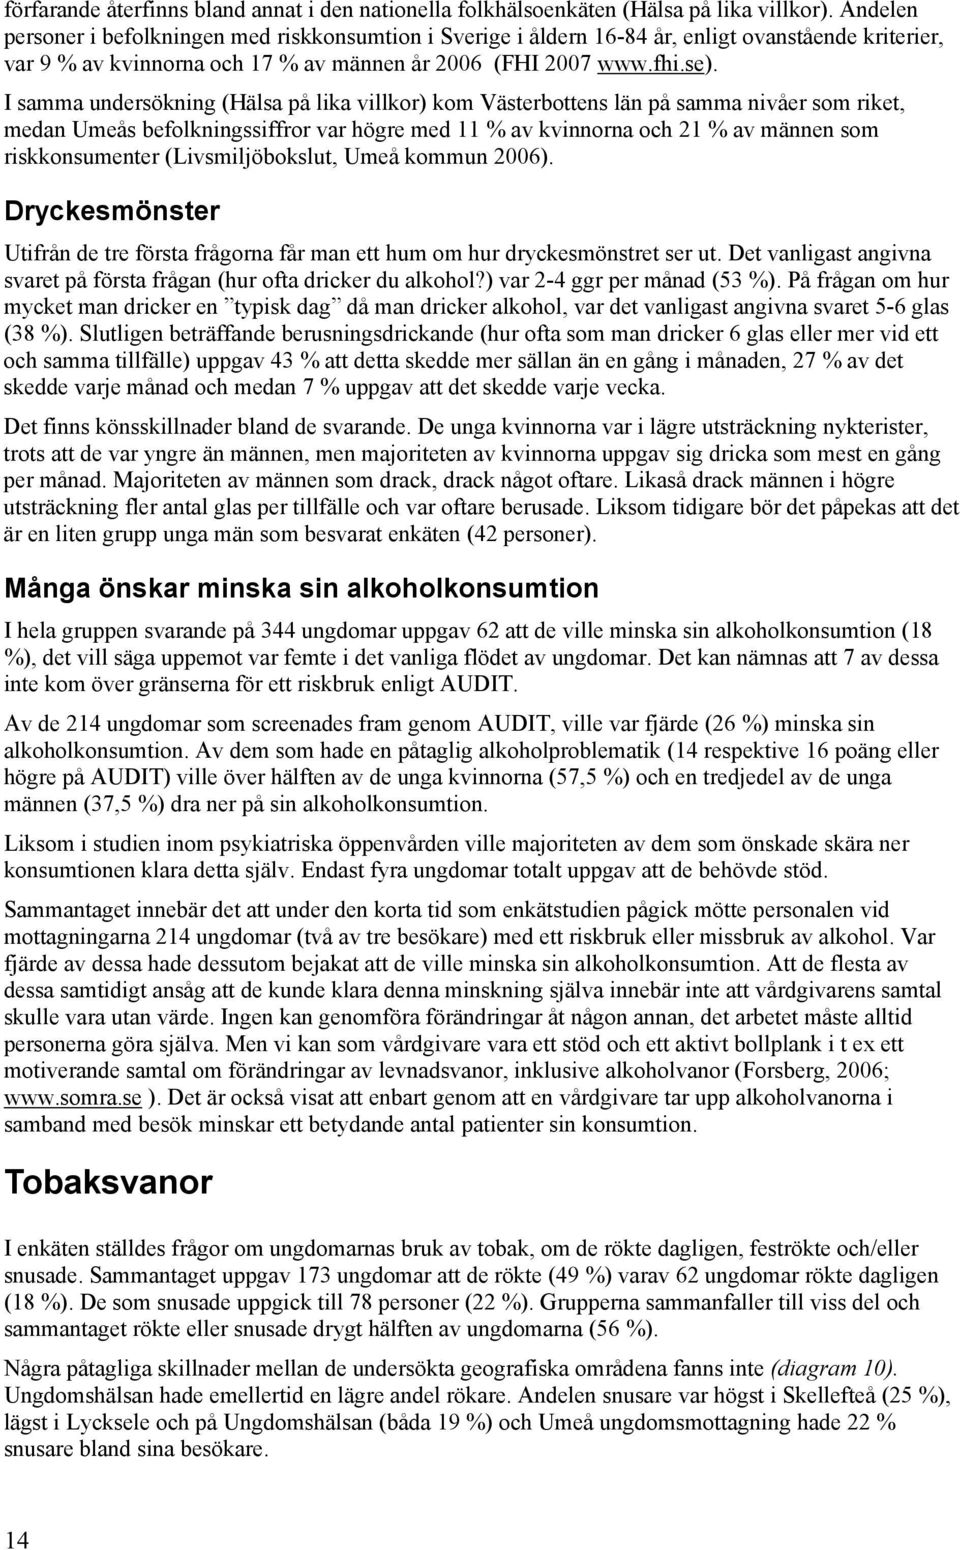 I samma undersökning (Hälsa på lika villkor) kom Västerbottens län på samma nivåer som riket, medan Umeås befolkningssiffror var högre med 11 % av kvinnorna och 21 % av männen som riskkonsumenter